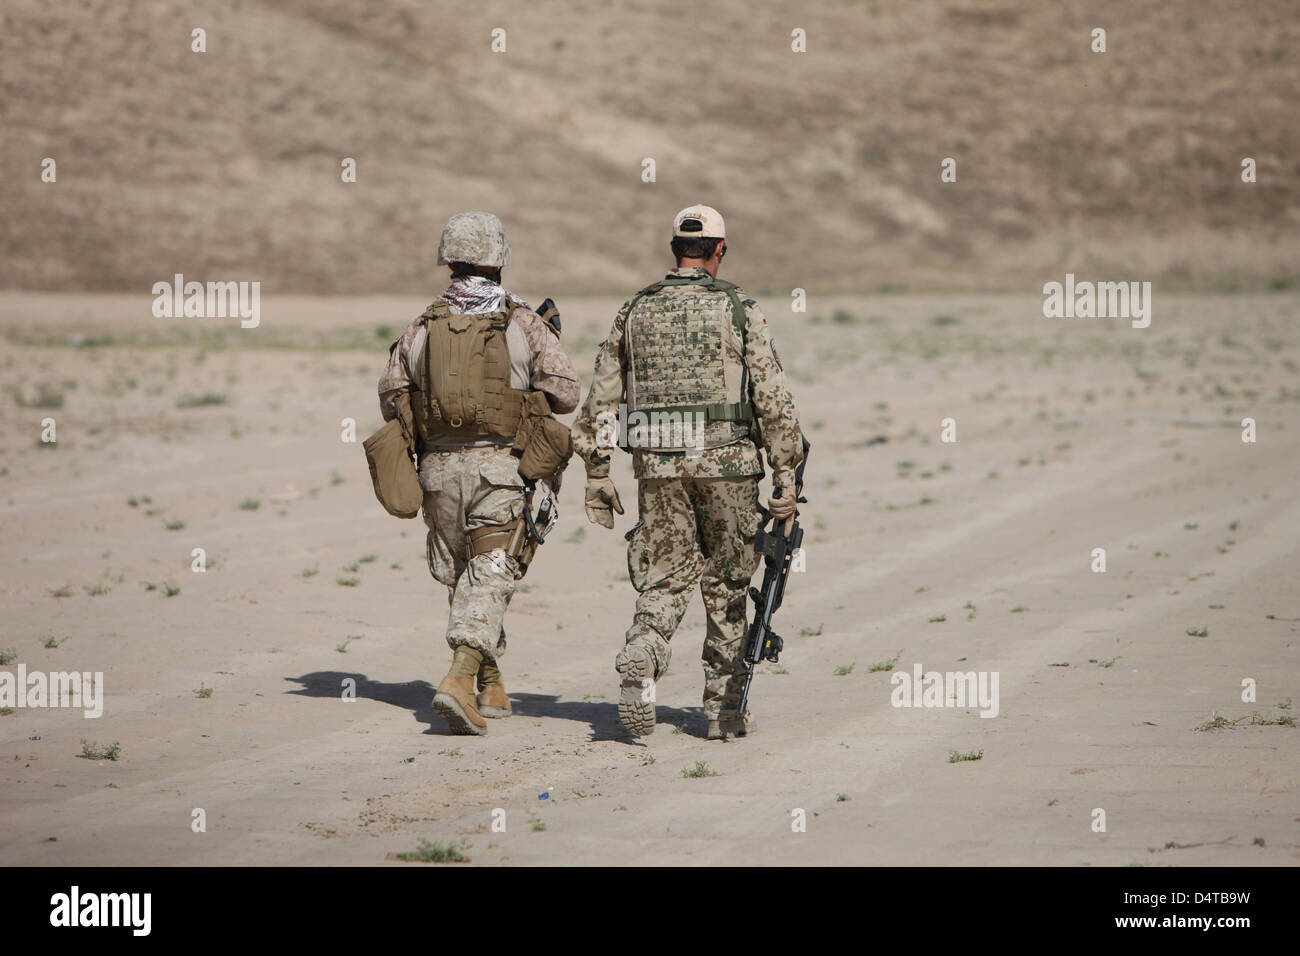 US-Marine und deutsche Koalition Soldaten gehen in ein Wadi in der Nähe von Kunduz, Afghanistan. Stockfoto